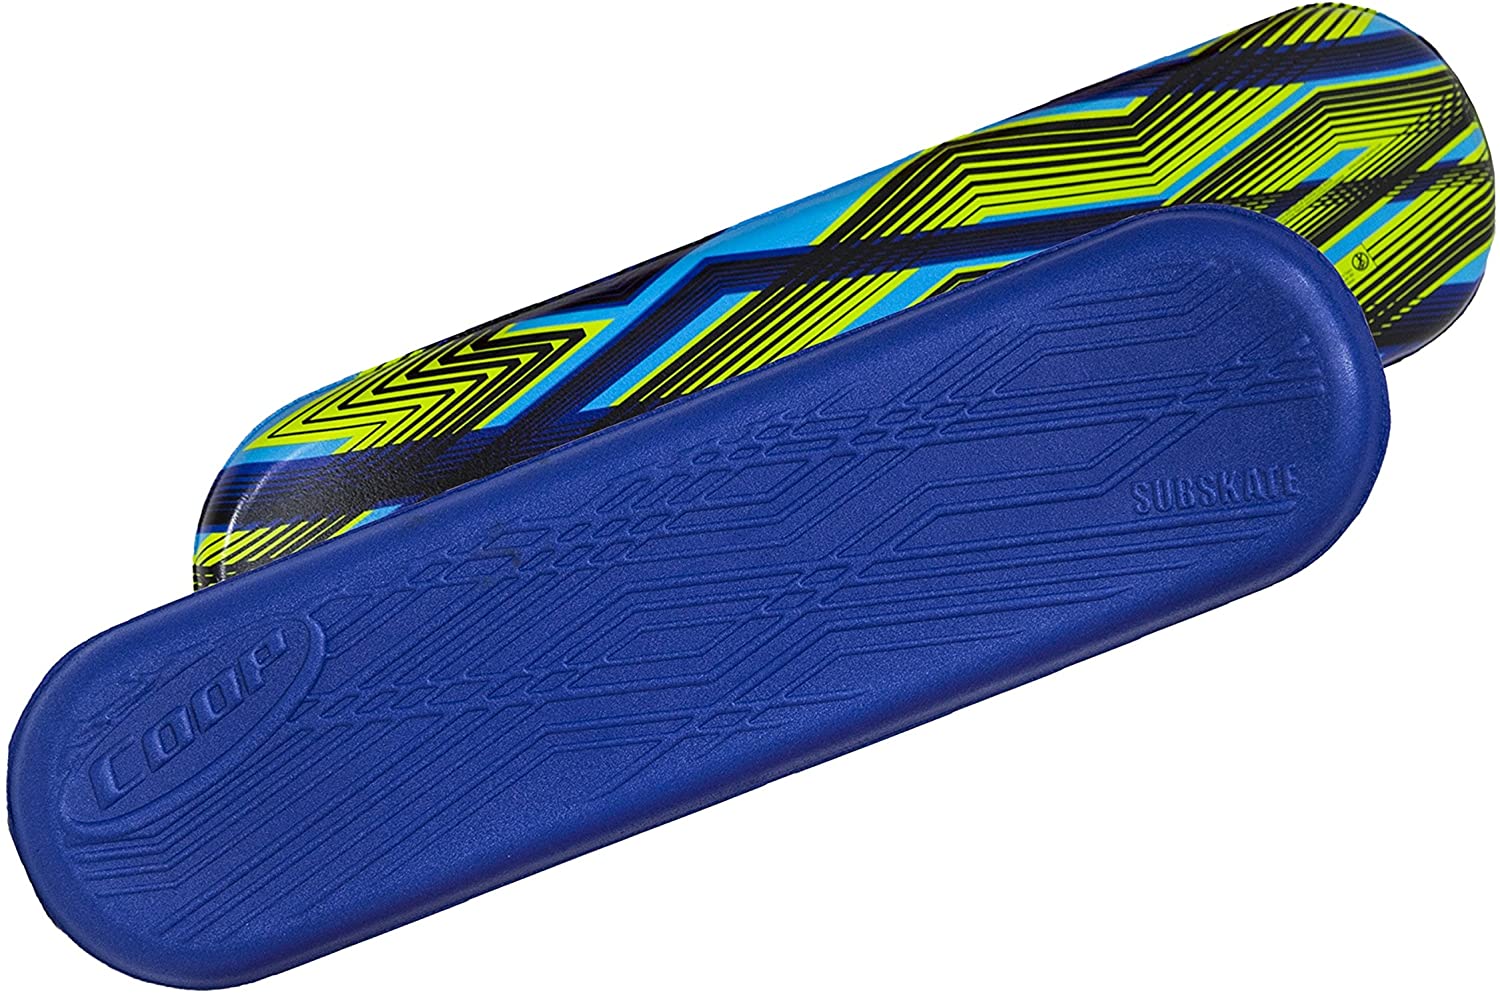 Coop Subskate Hydro – Underwater Skateboard